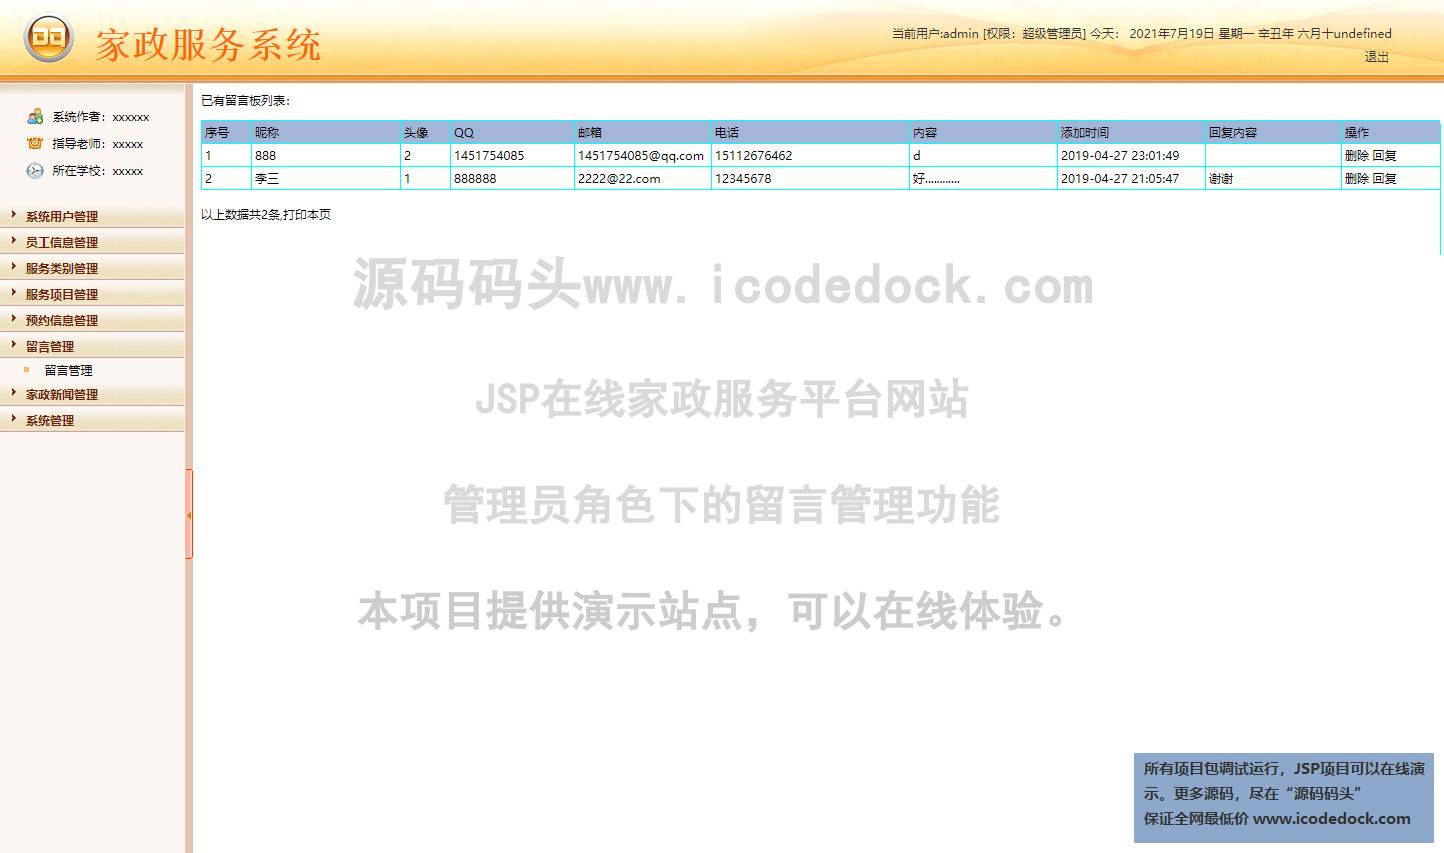 源码码头-JSP在线家政服务平台网站-管理员角色-留言管理